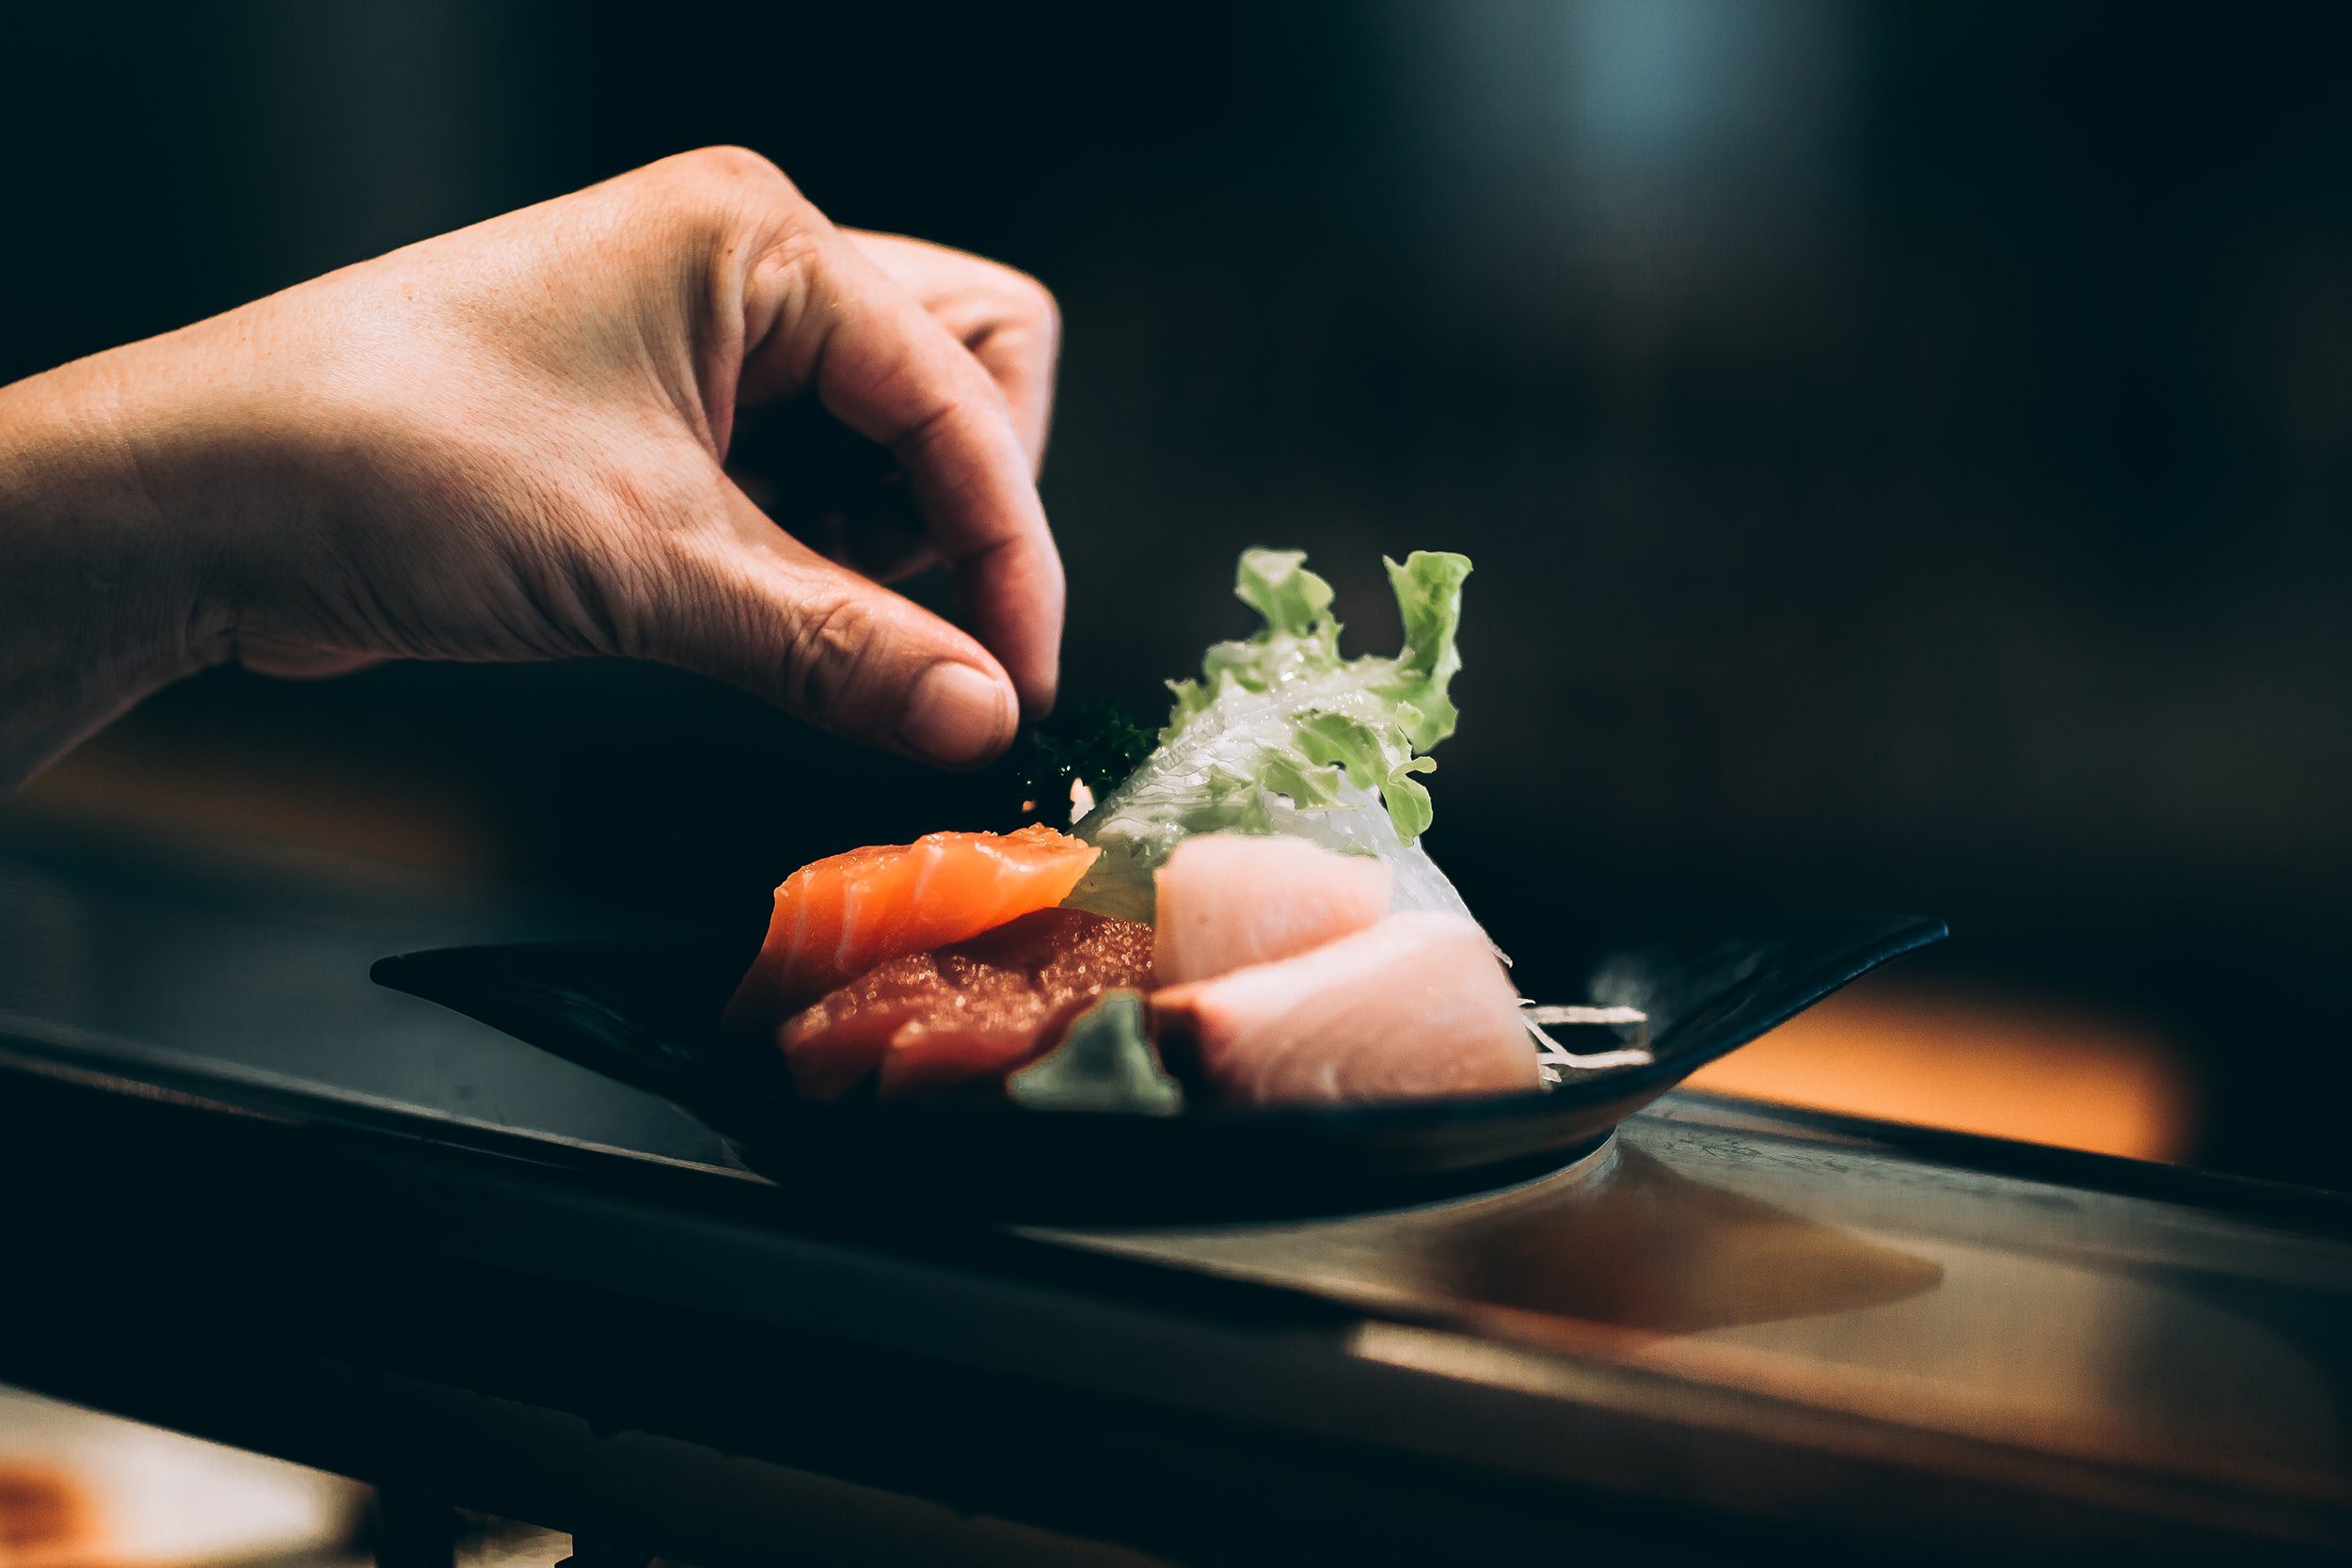 Sushis / gastronomie japonaise / unsplash - Kyle Head